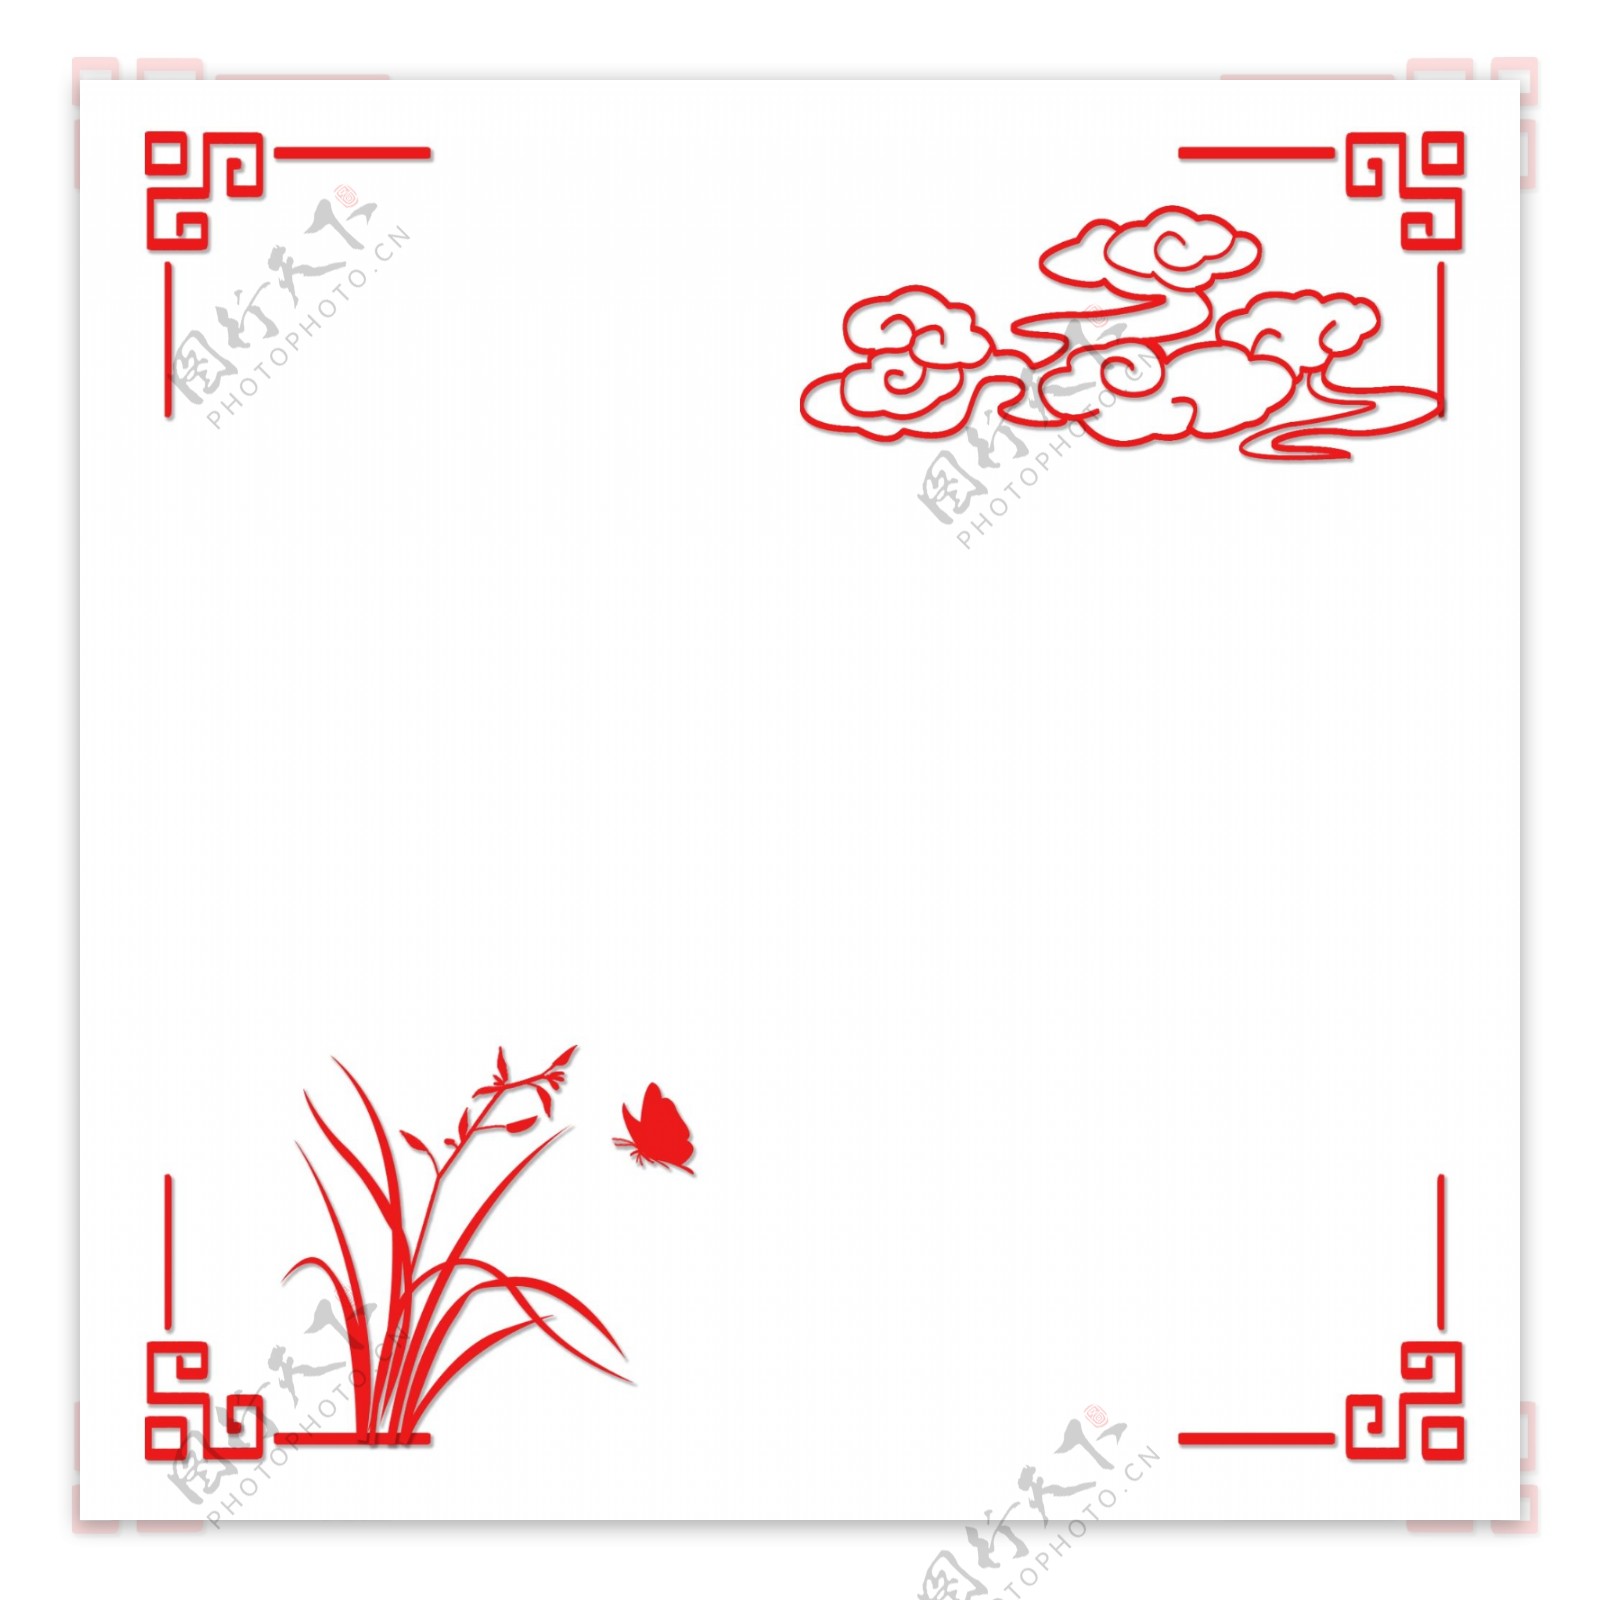 中国风古典风格扁平风格边框素材矢量图